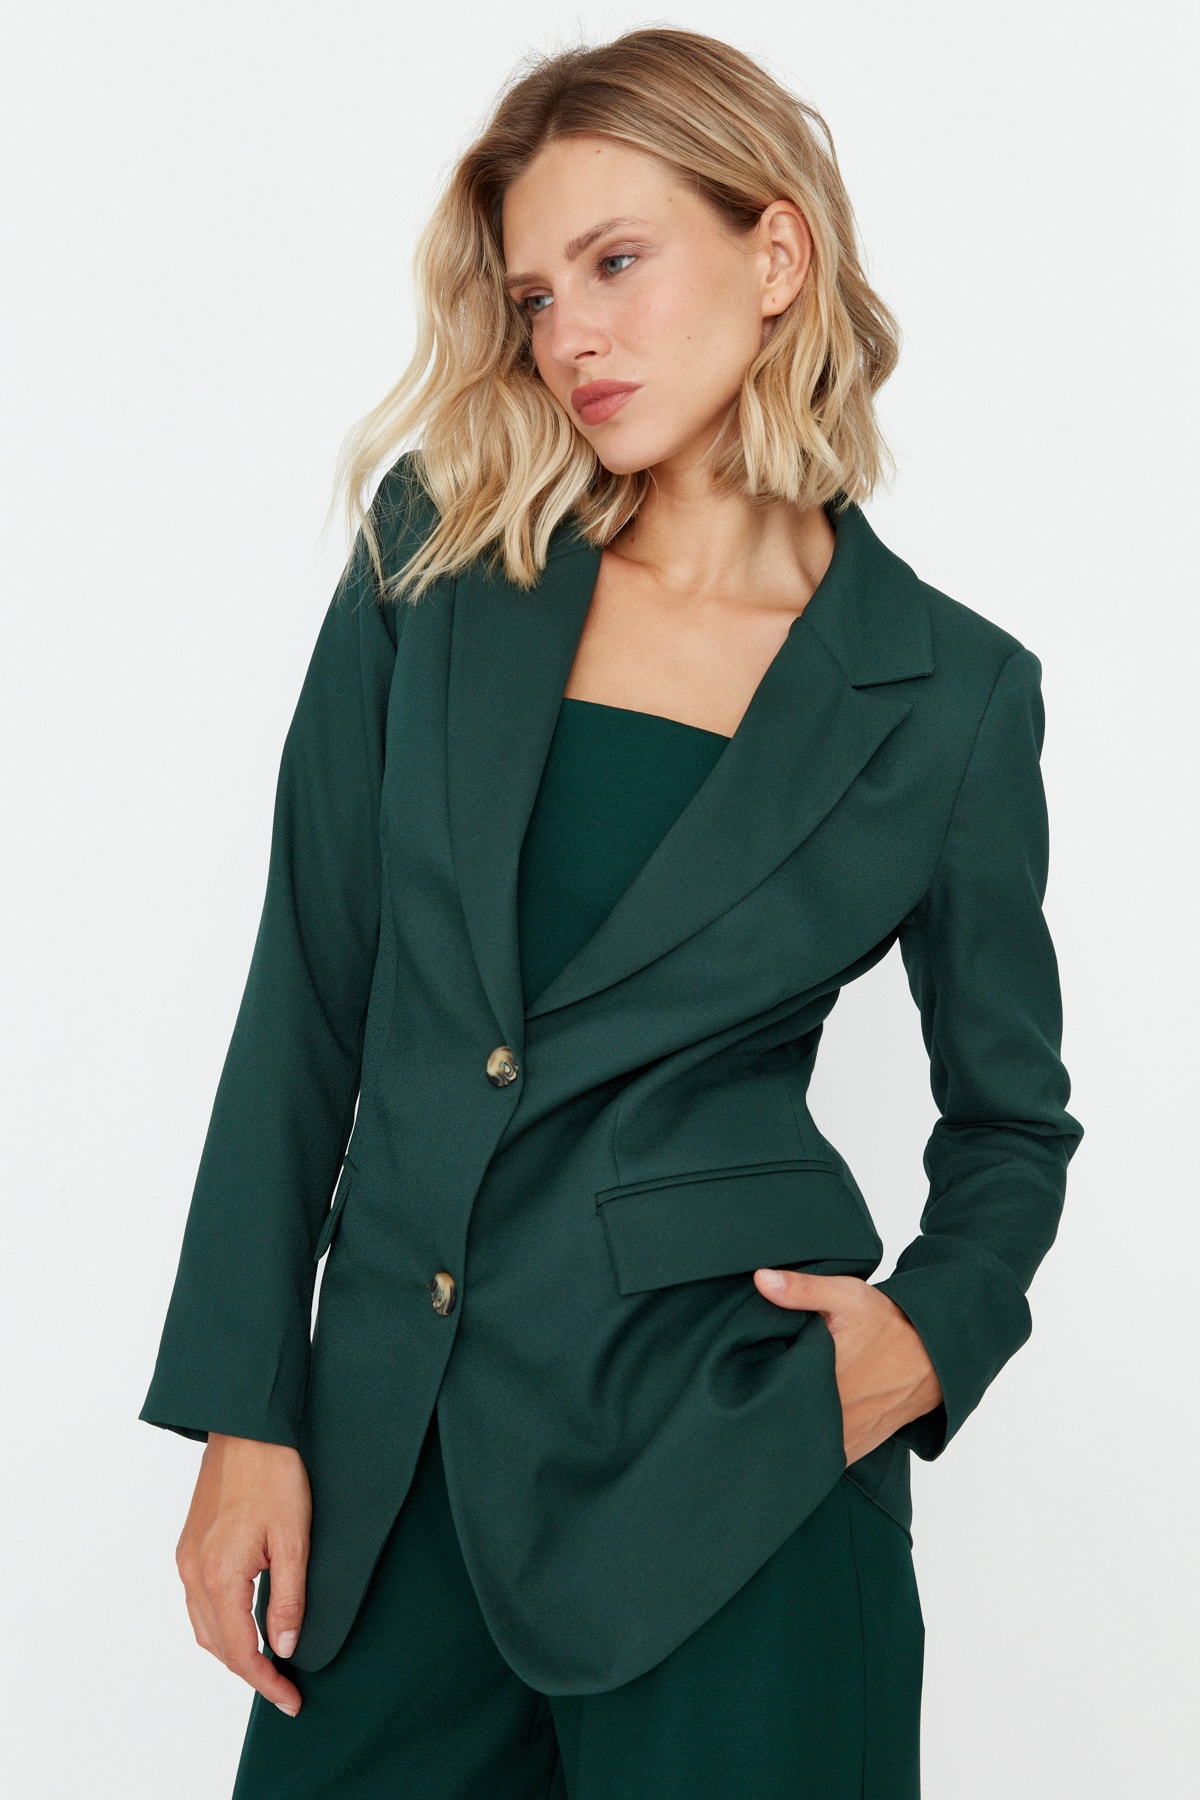 Trendyol Green Woven Lined Blazer Jacket